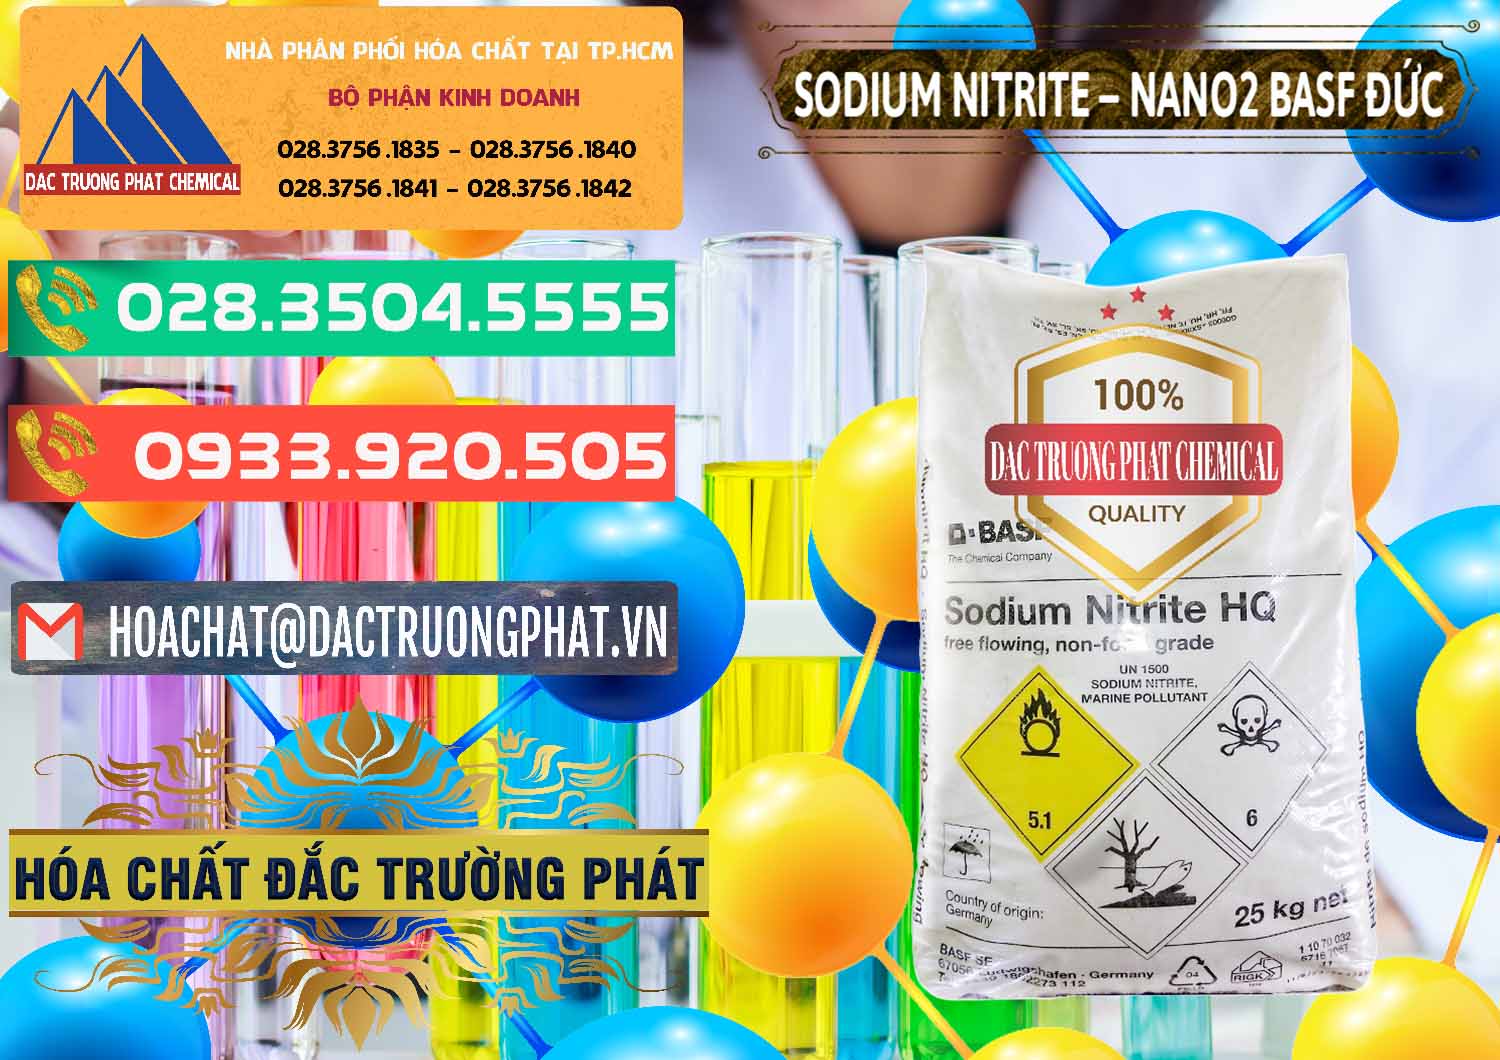 Cty kinh doanh & bán Sodium Nitrite - NANO2 Đức BASF Germany - 0148 - Nơi nhập khẩu và cung cấp hóa chất tại TP.HCM - congtyhoachat.com.vn